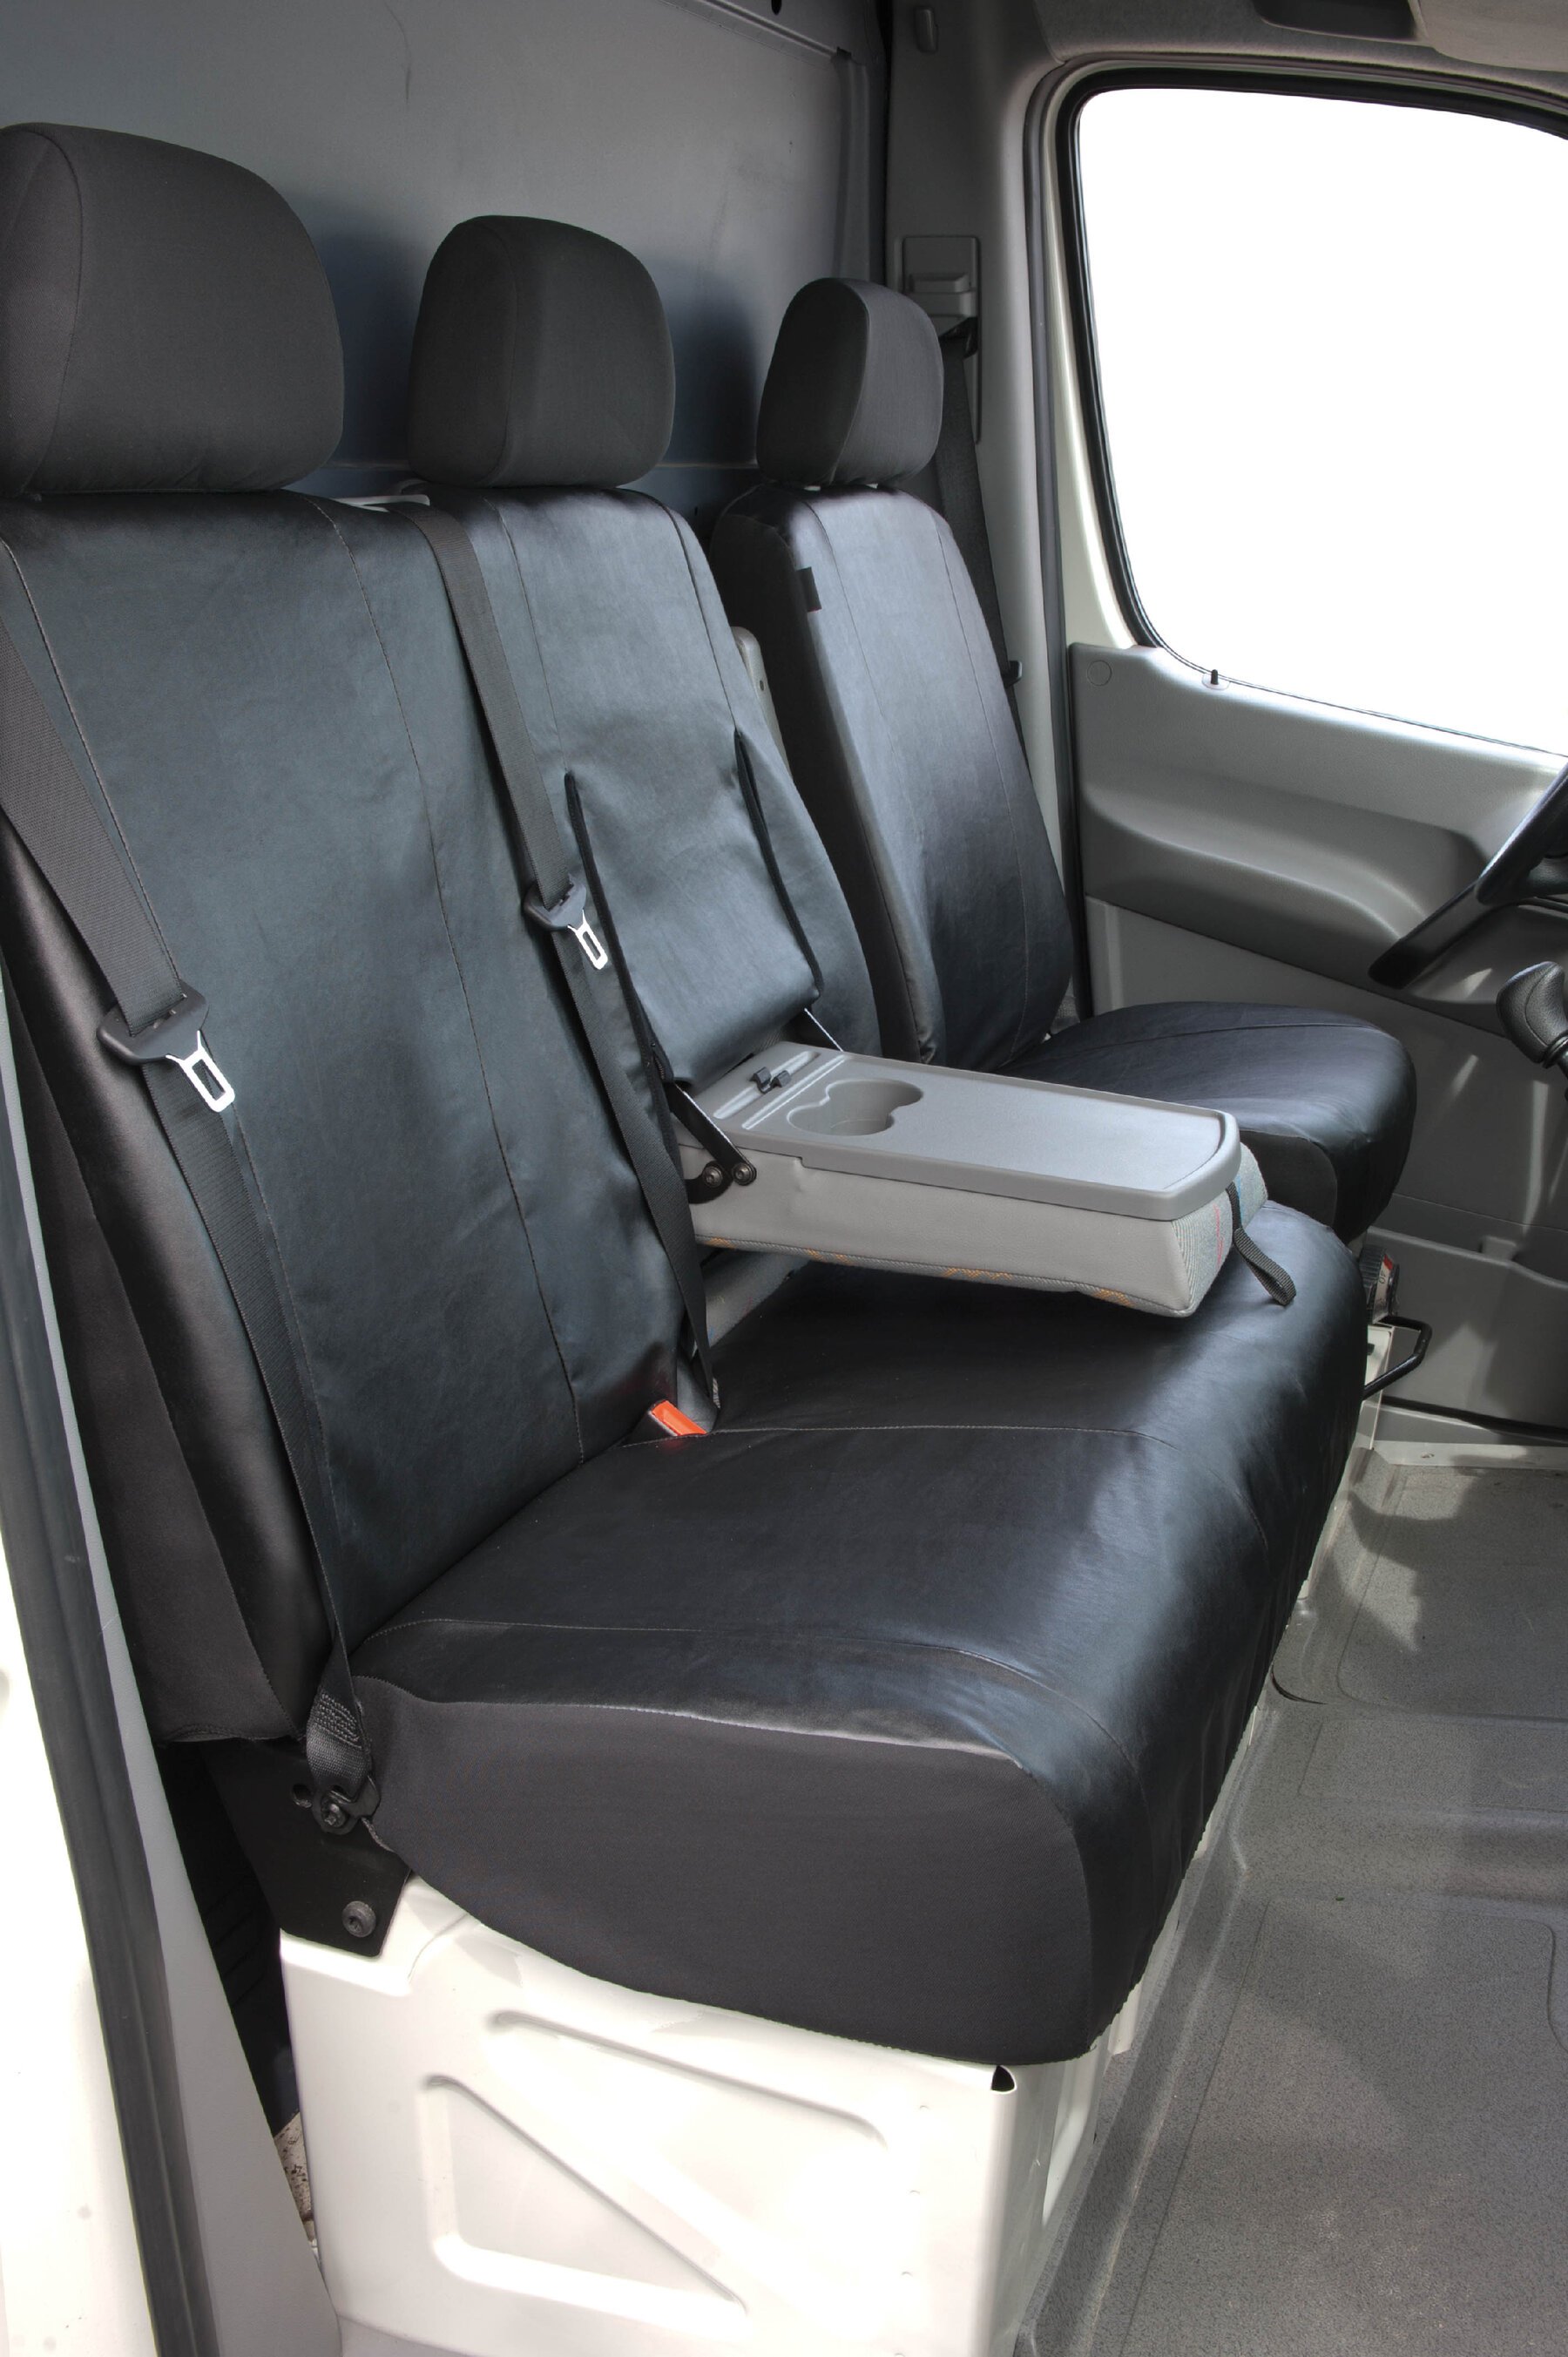 Housse de siège Transporter en simili cuir pour VW Crafter, Mercedes Sprinter, siège simple et double